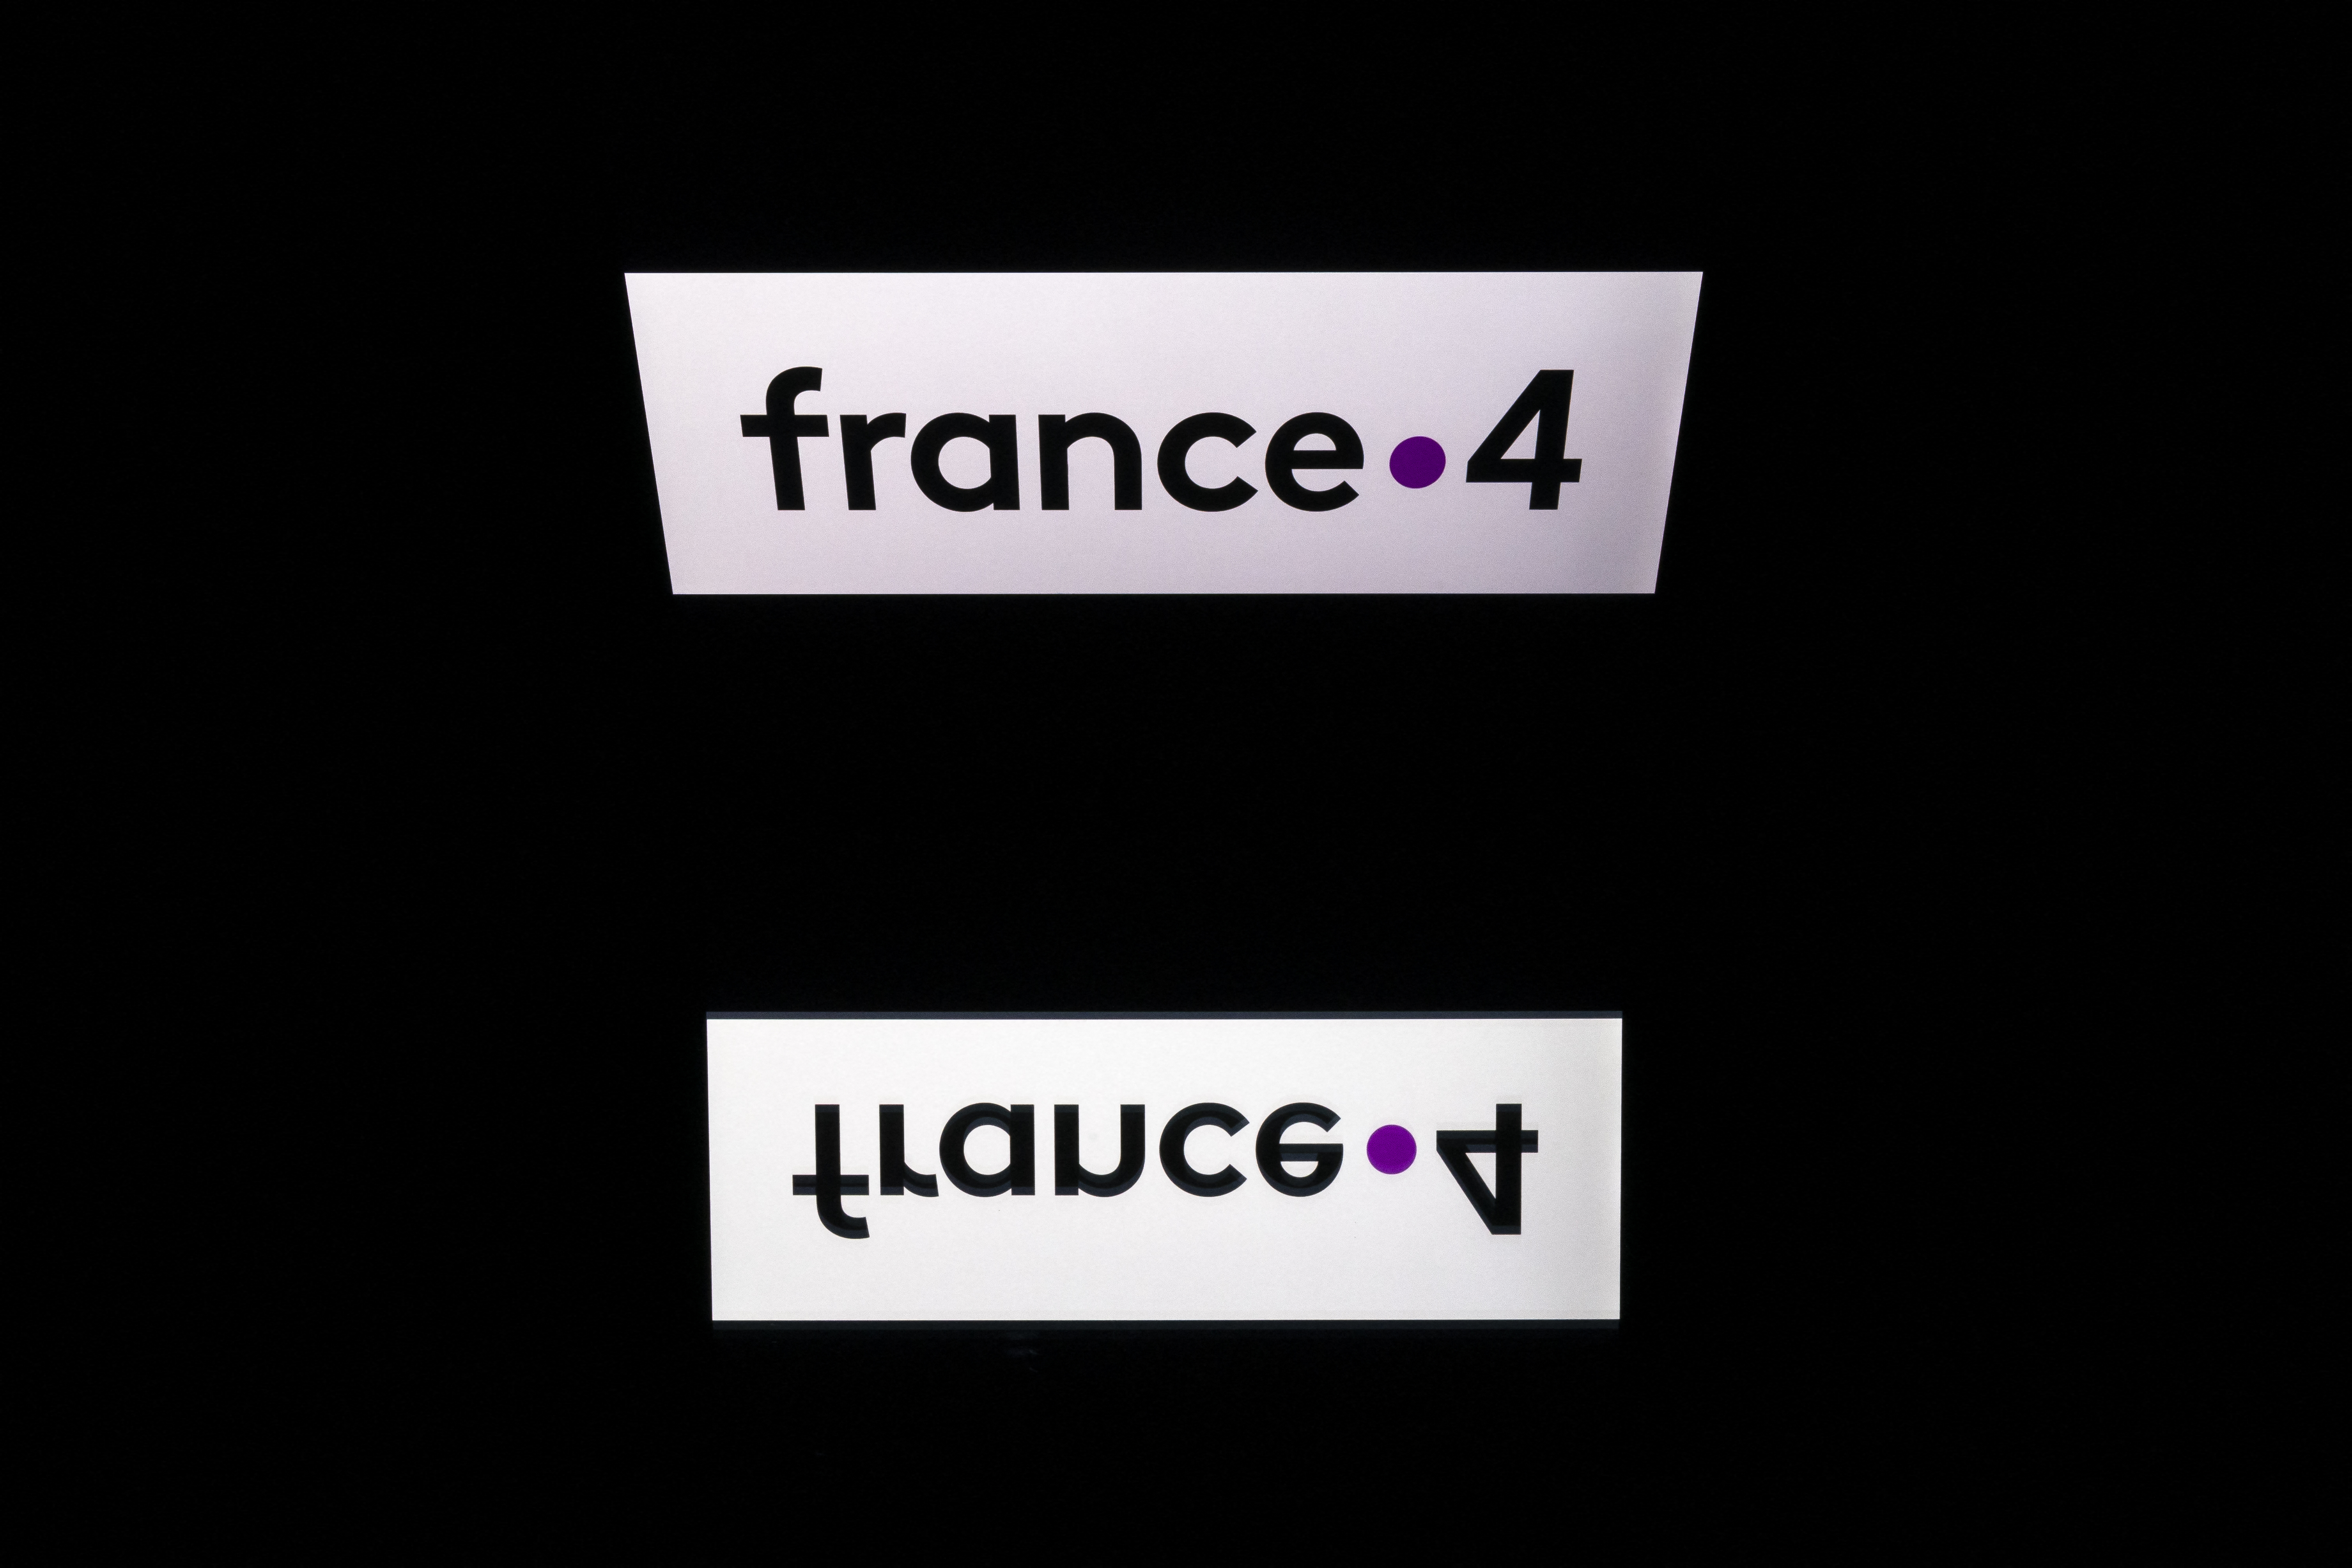 Macron annonce le maintien de France 4 comme chaîne jeunesse et culture